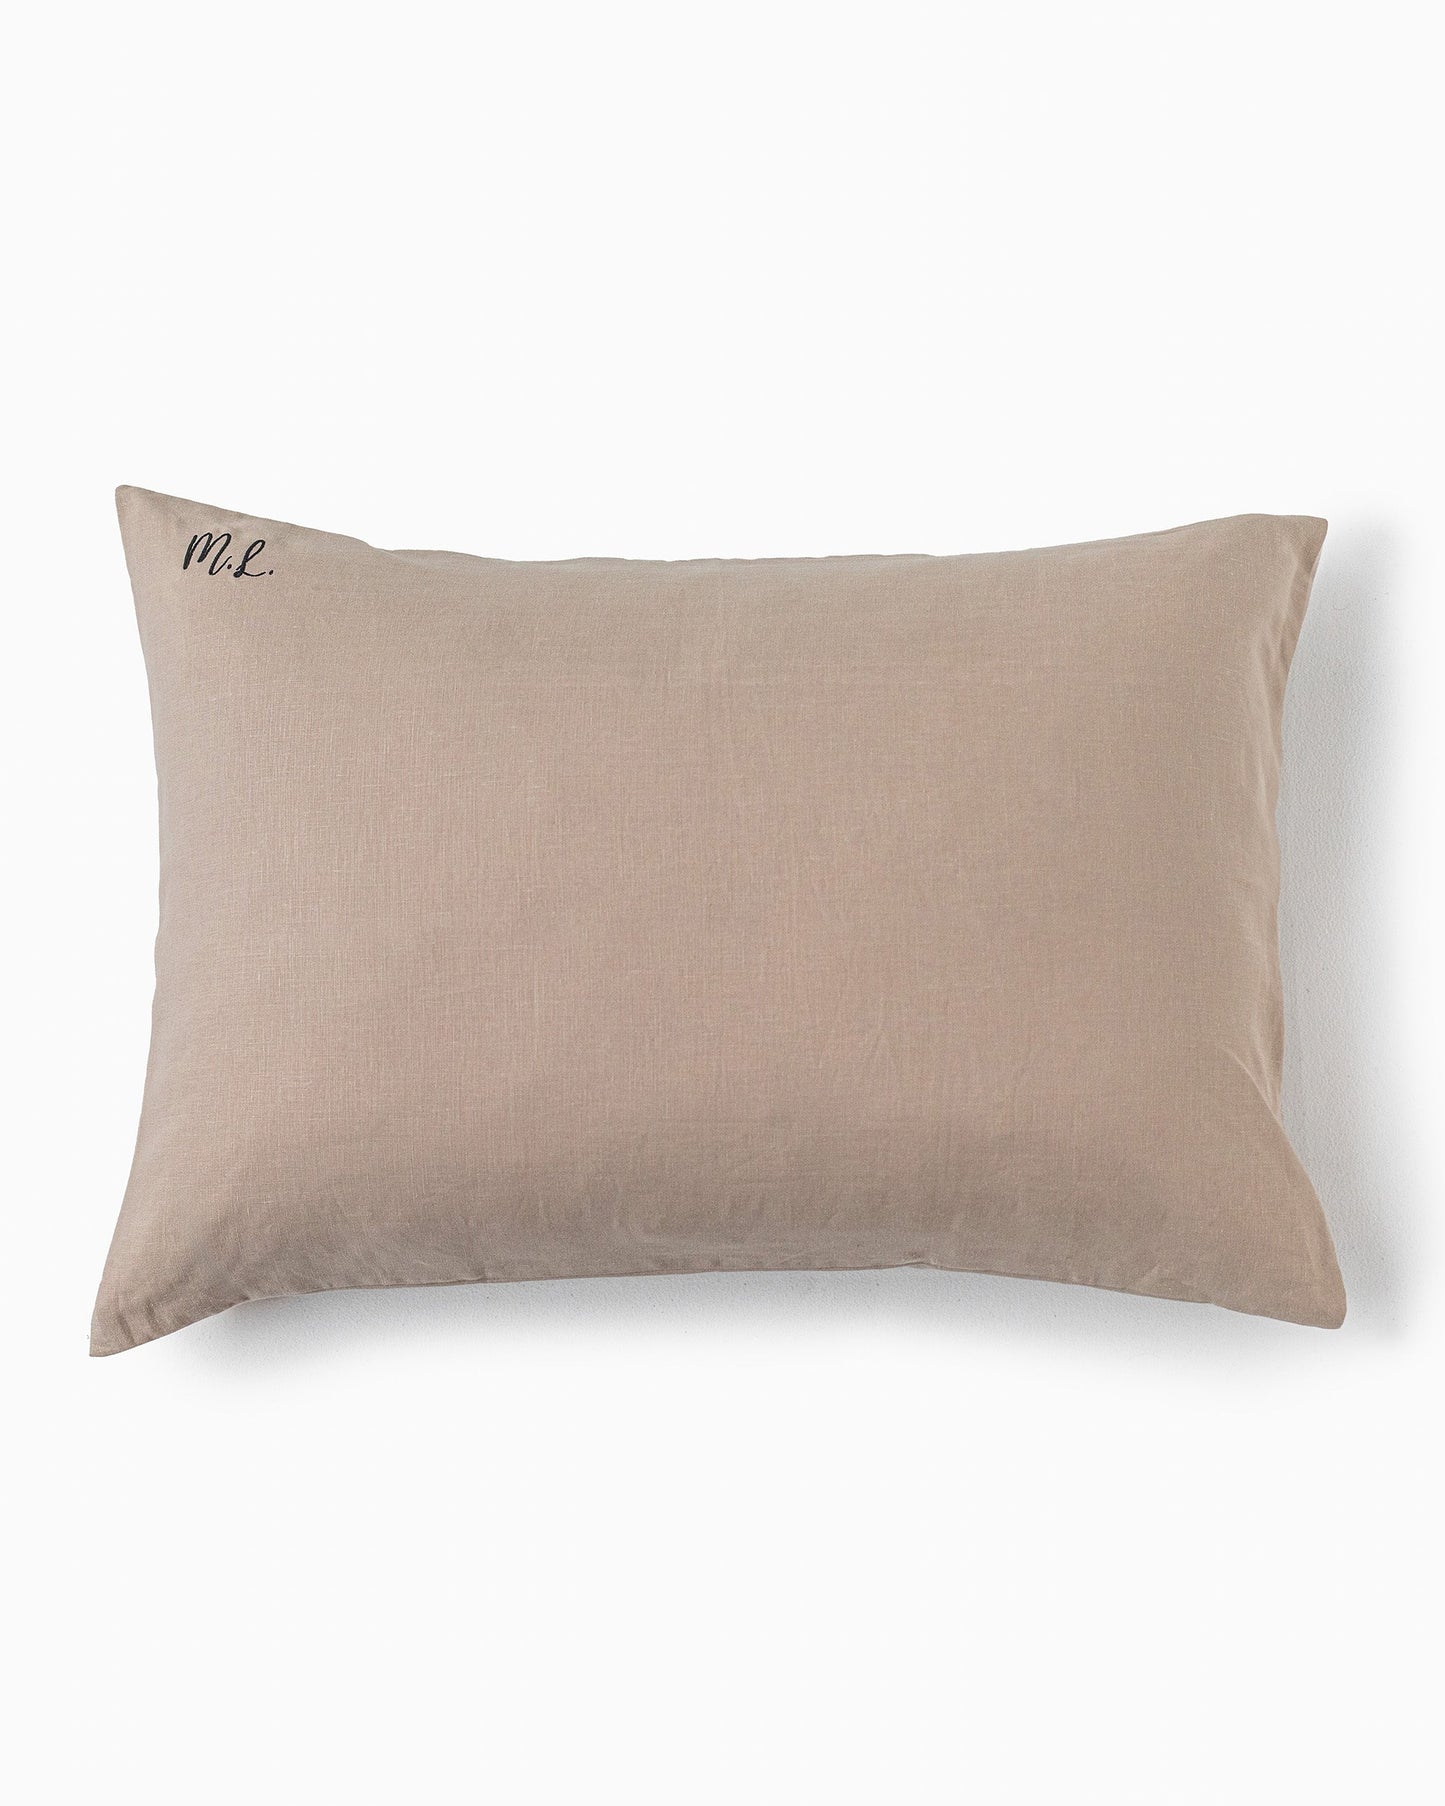 Natural linen pillowcase - sneakstylesanctums